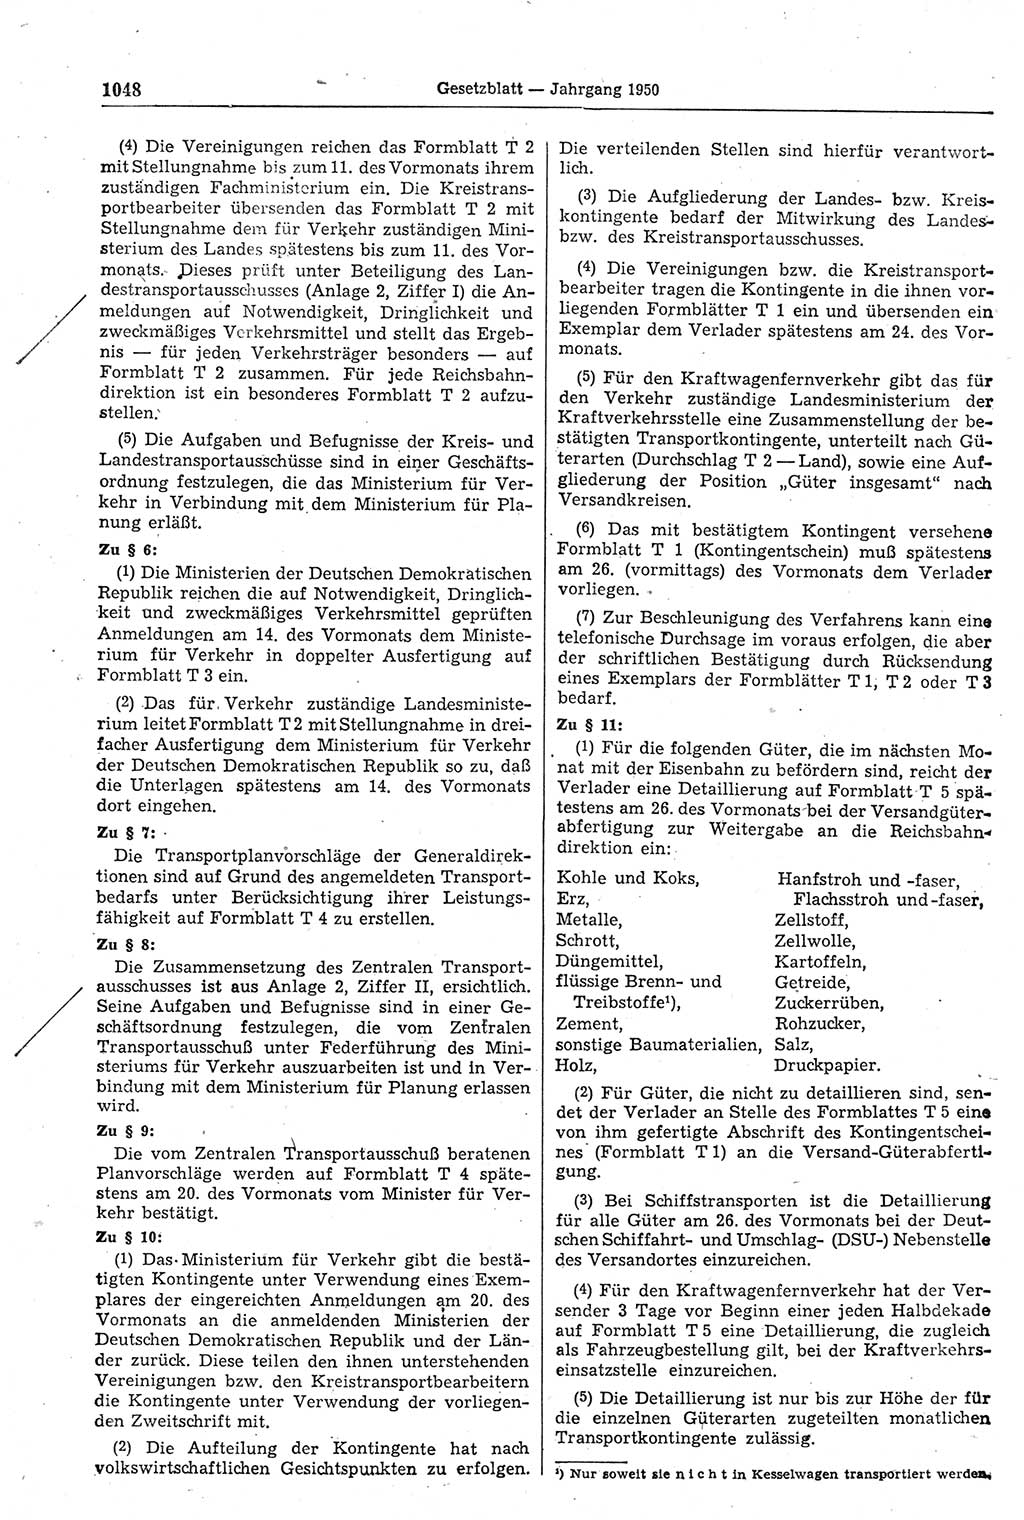 Gesetzblatt (GBl.) der Deutschen Demokratischen Republik (DDR) 1950, Seite 1048 (GBl. DDR 1950, S. 1048)